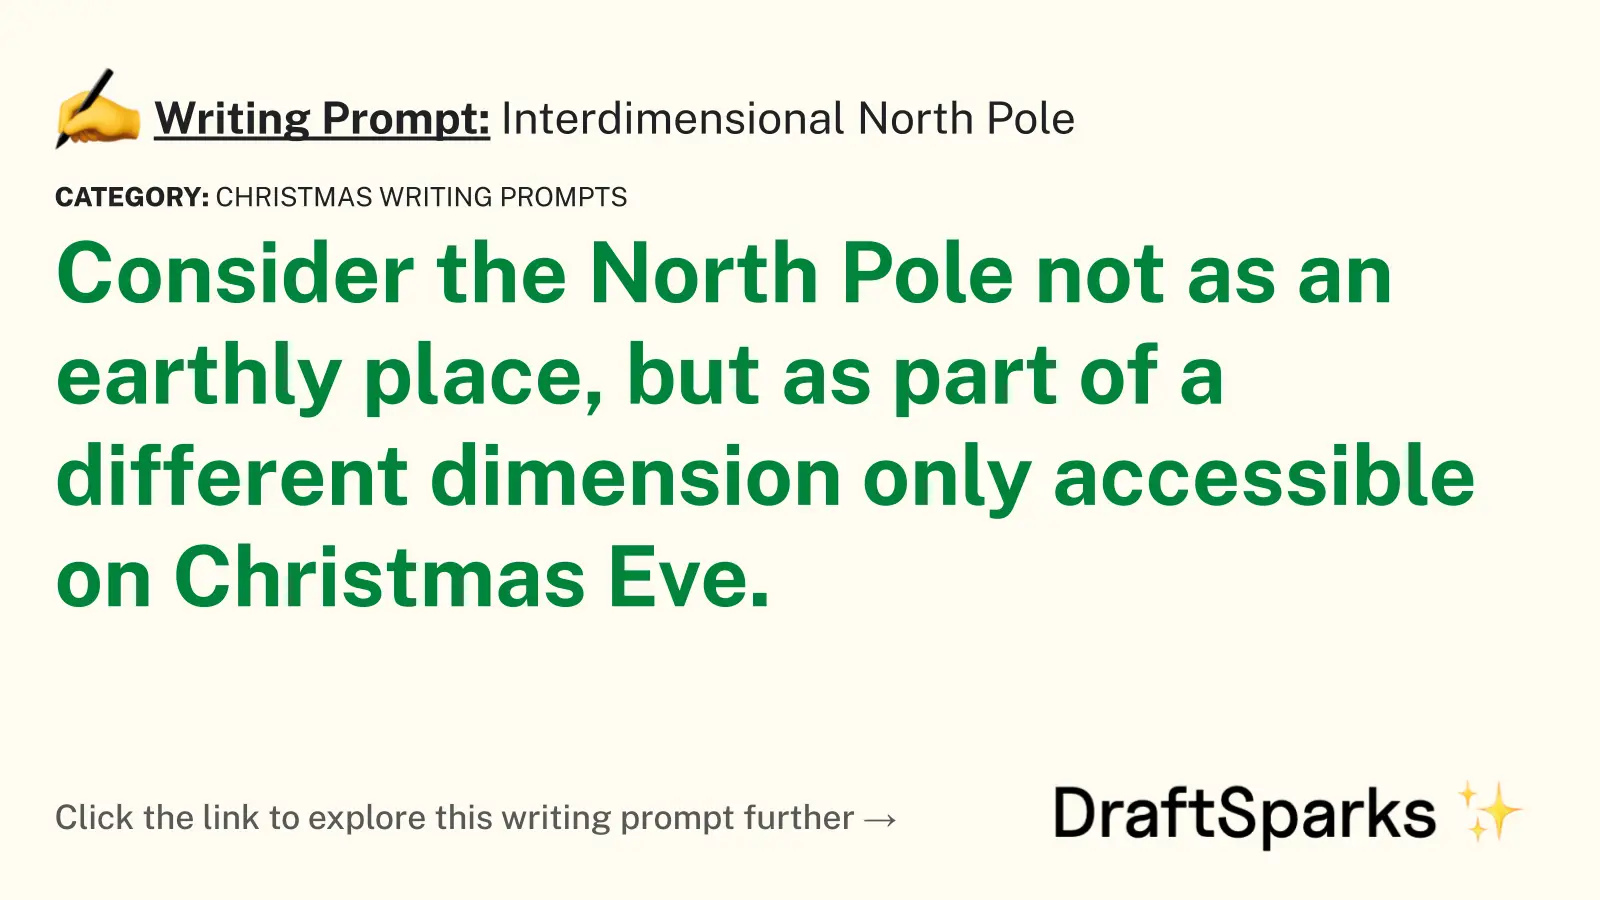 Interdimensional North Pole